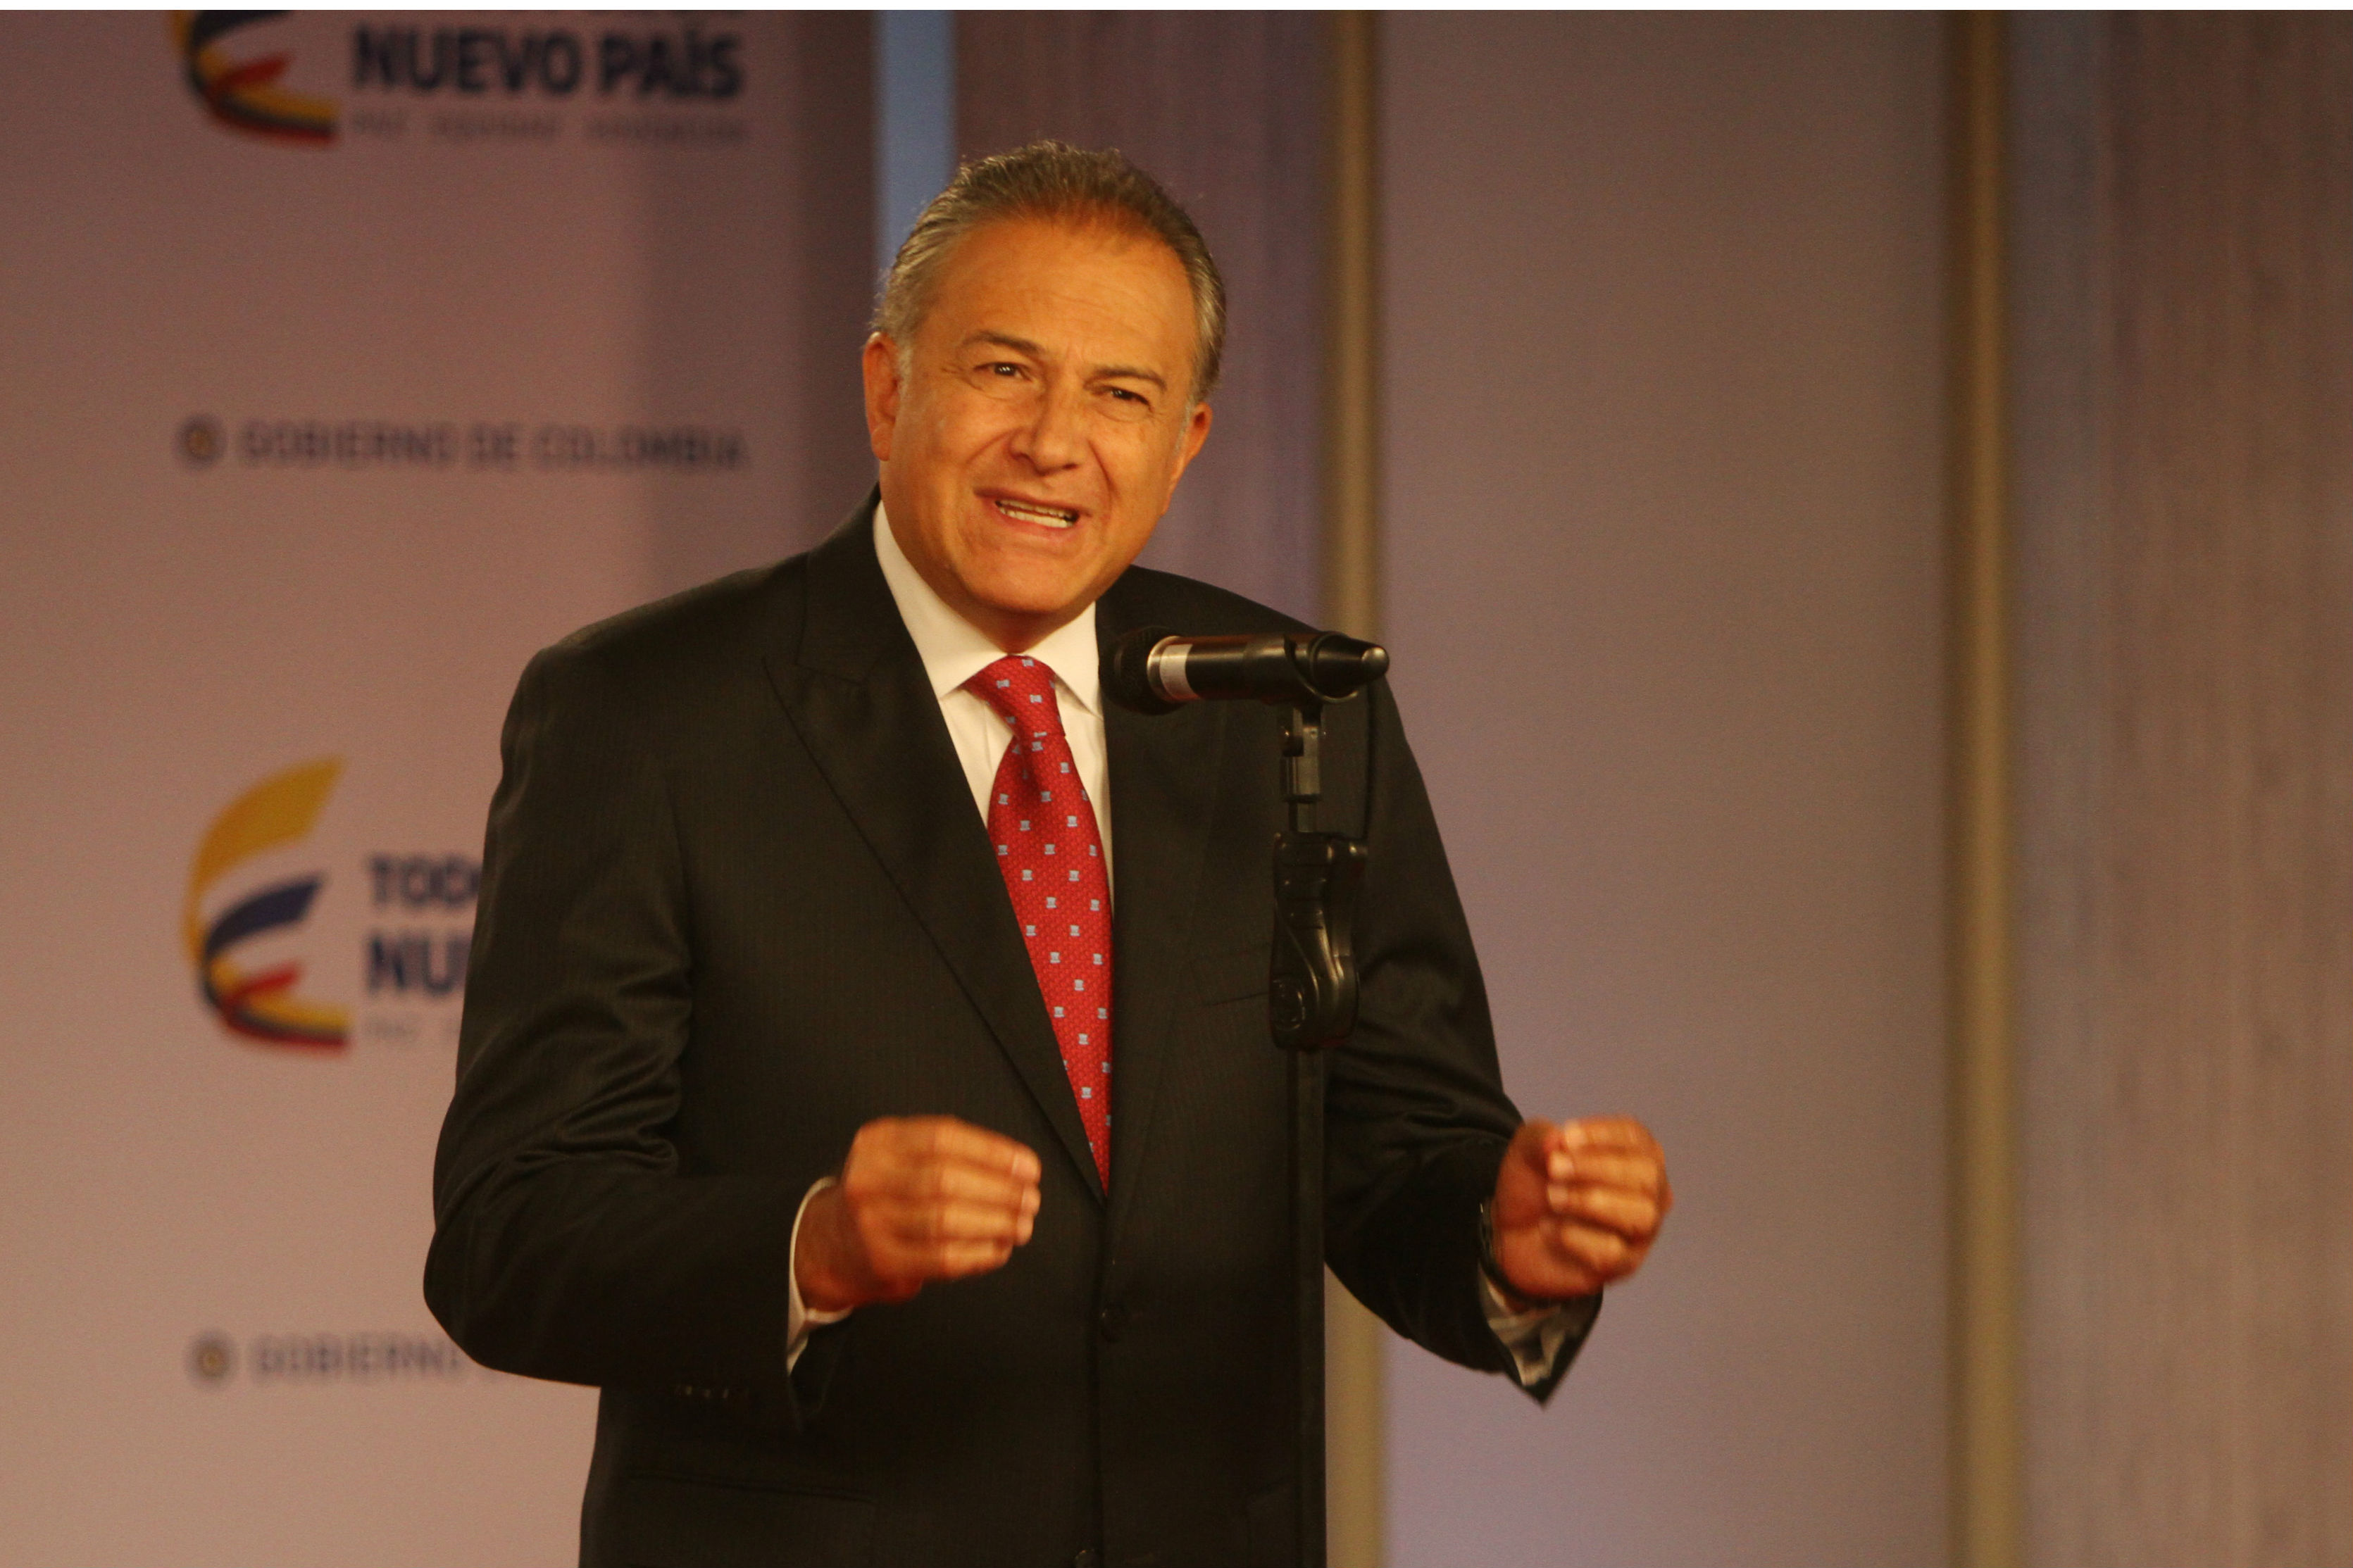 El vicepresidente colombiano aseguró que la premisa de la política exterior de su país se resume en soluciones democráticas, algo que supone un gran desafío